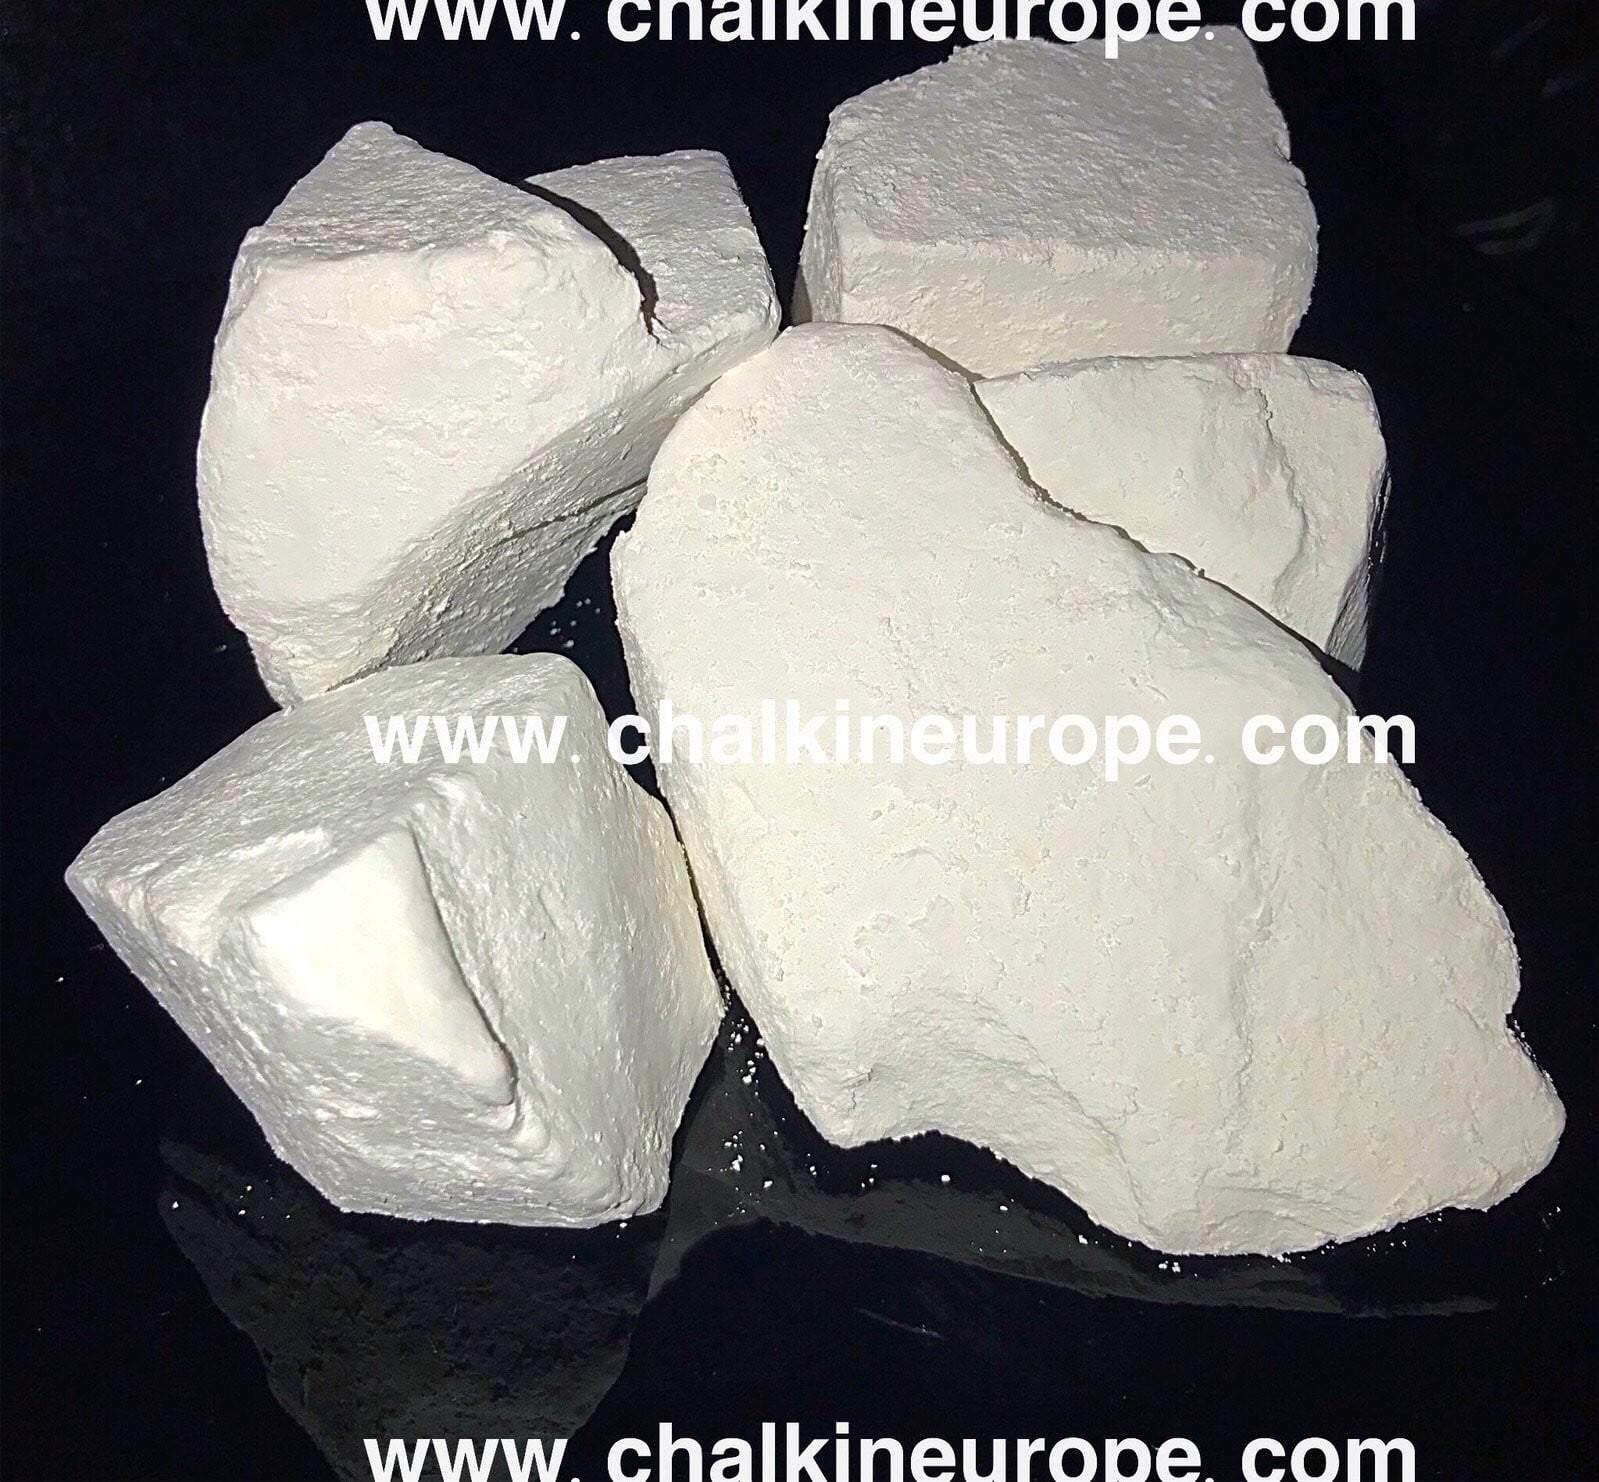 Velvet Cream Chalk - Chalkineurope